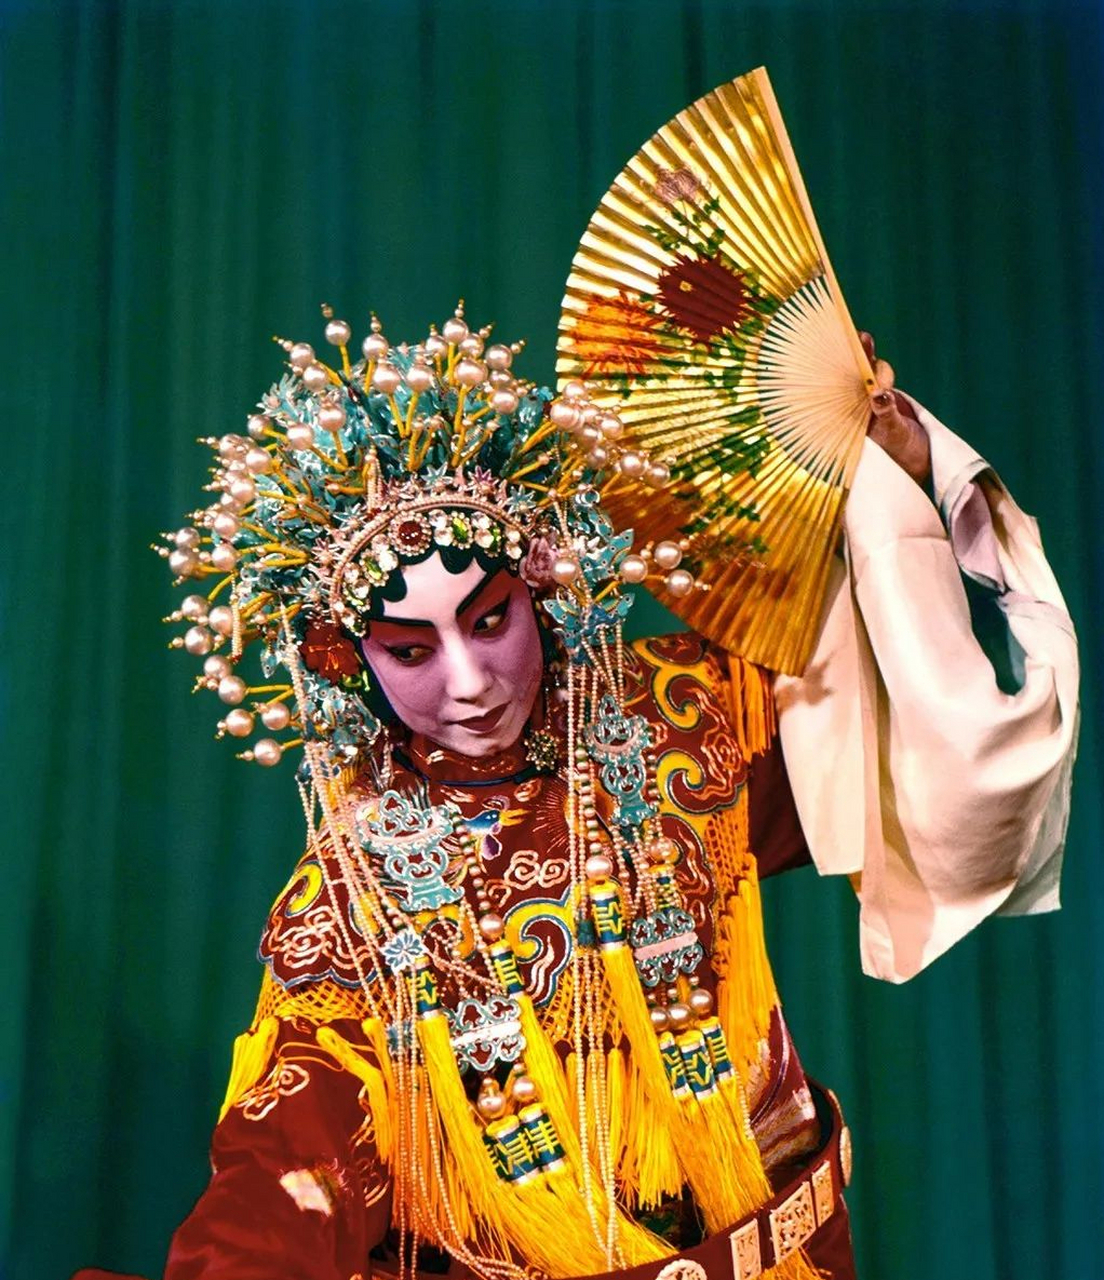 京剧《贵妃醉酒》中的杨贵妃扮演者——京剧表演艺术家杜近芳,1960年